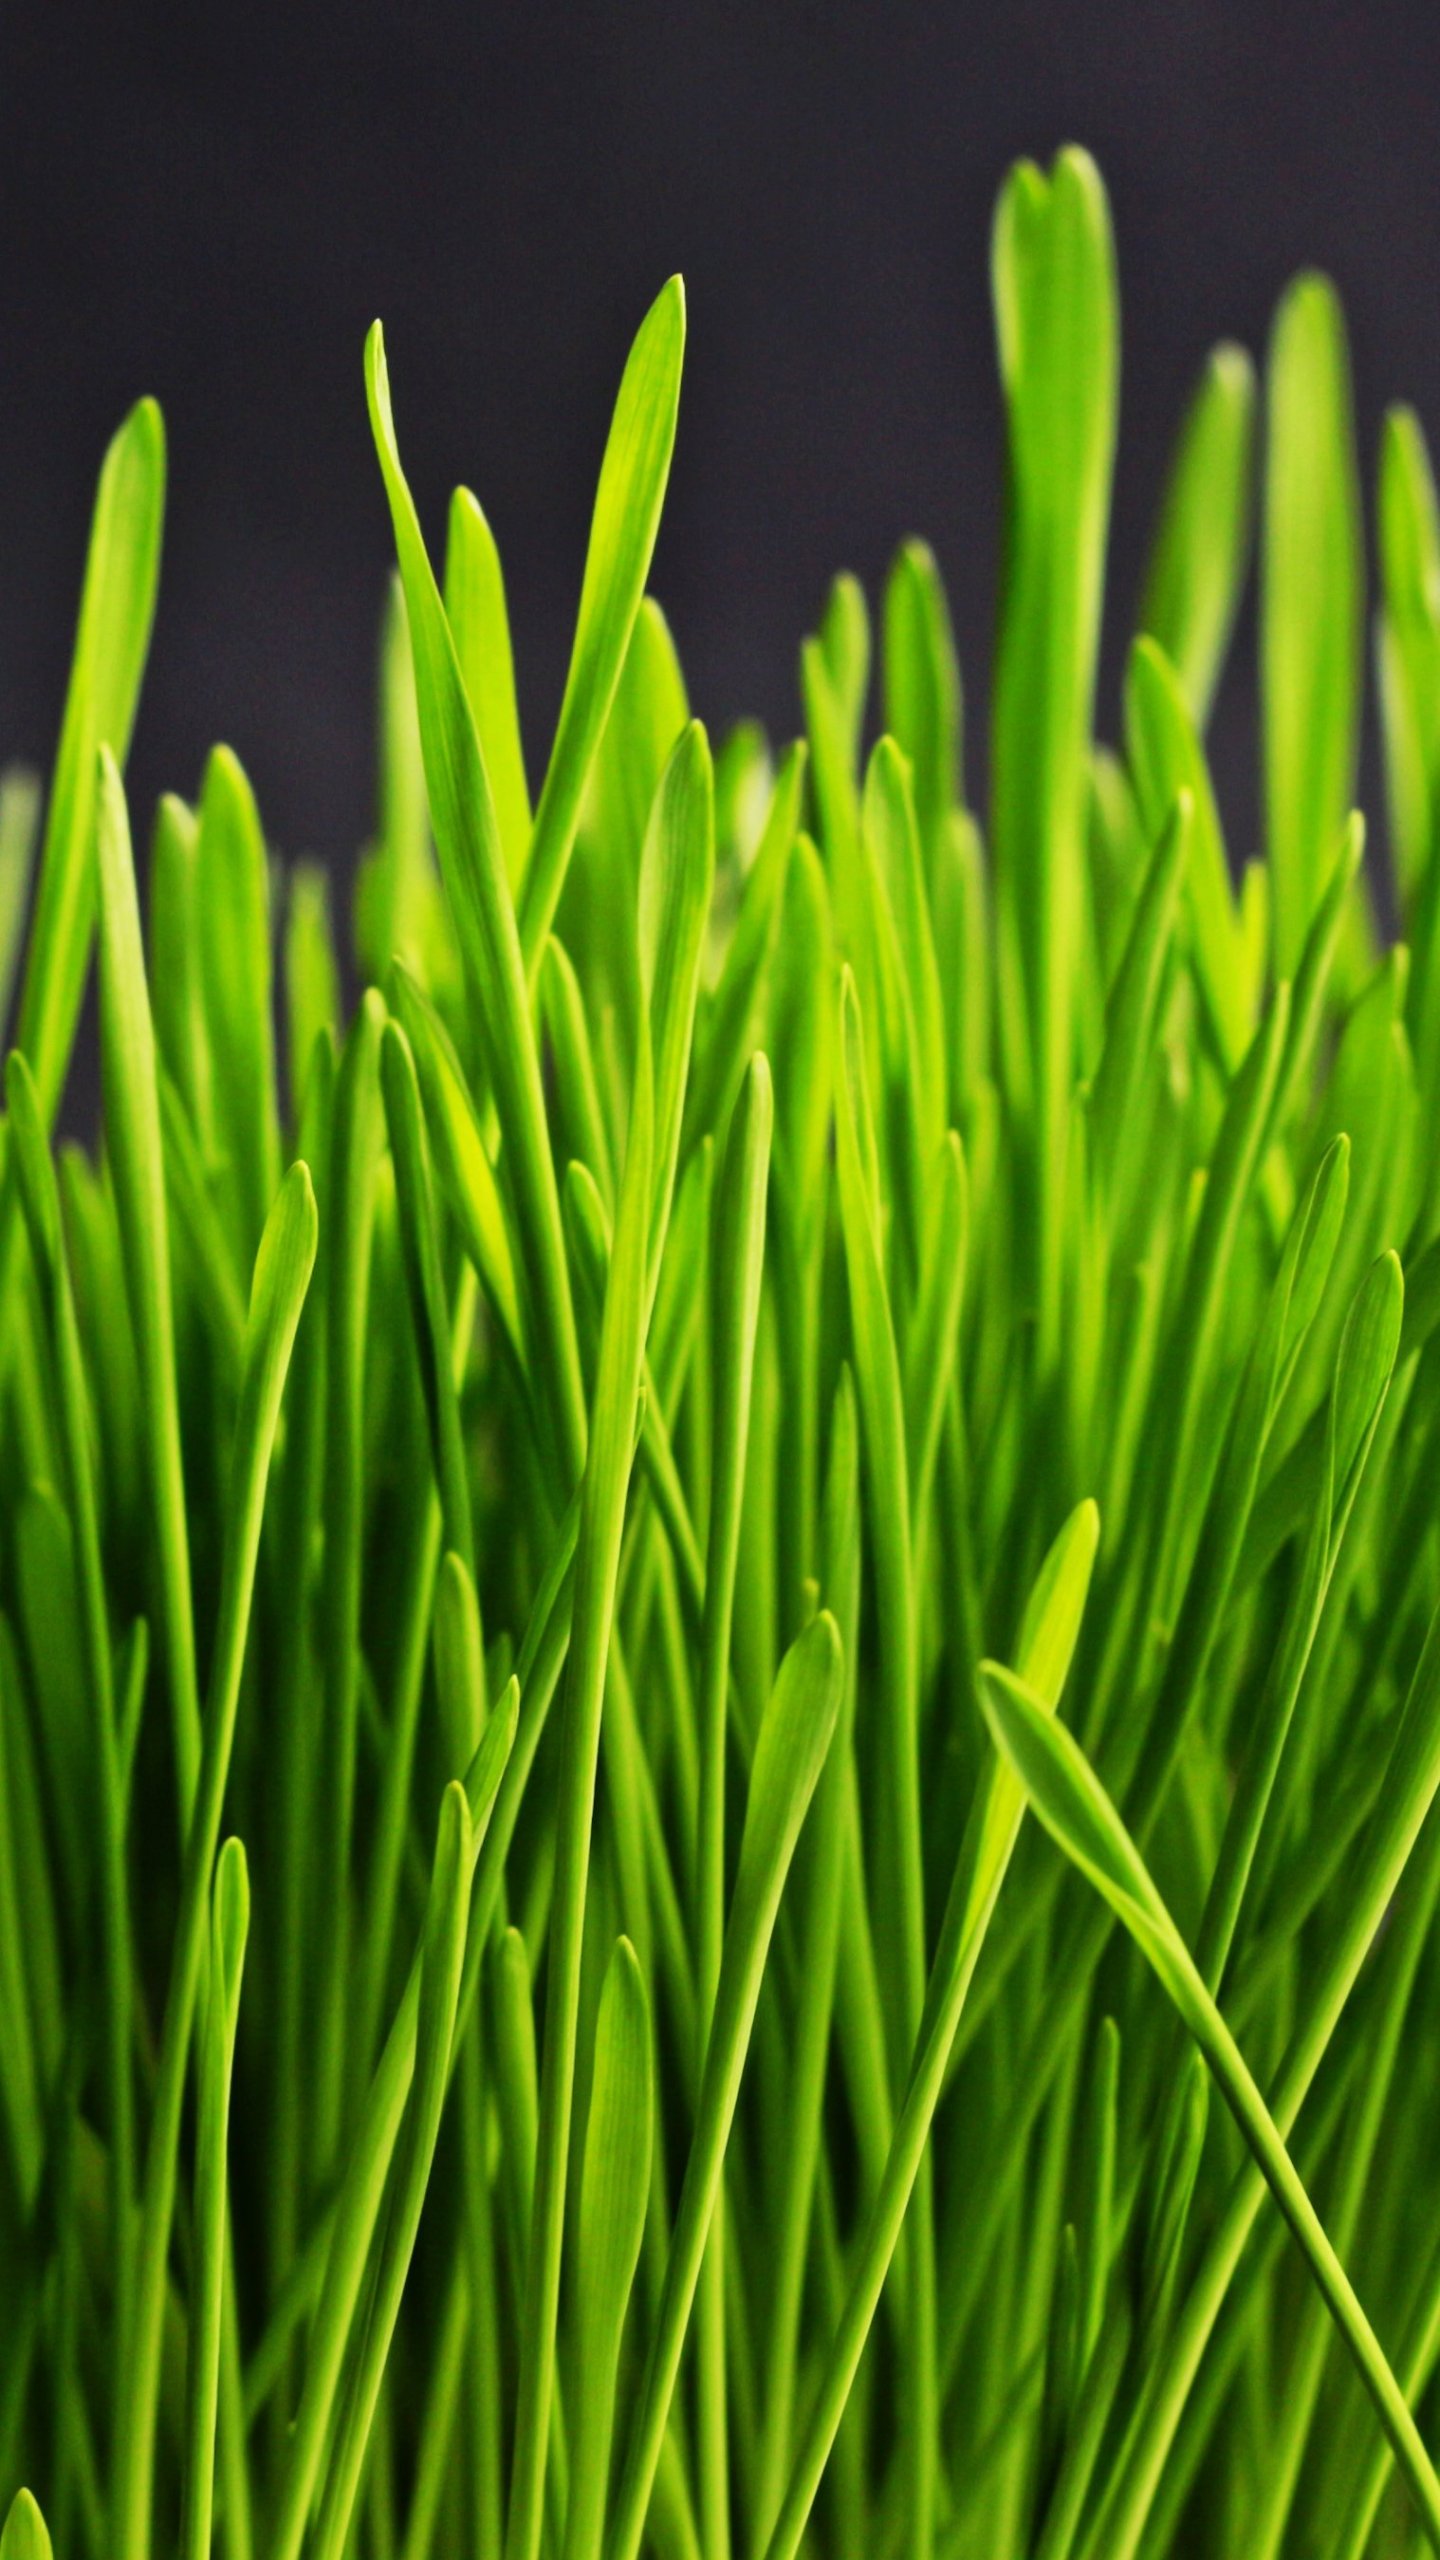 Green Grass Wallpaper, Android & Desktop Background